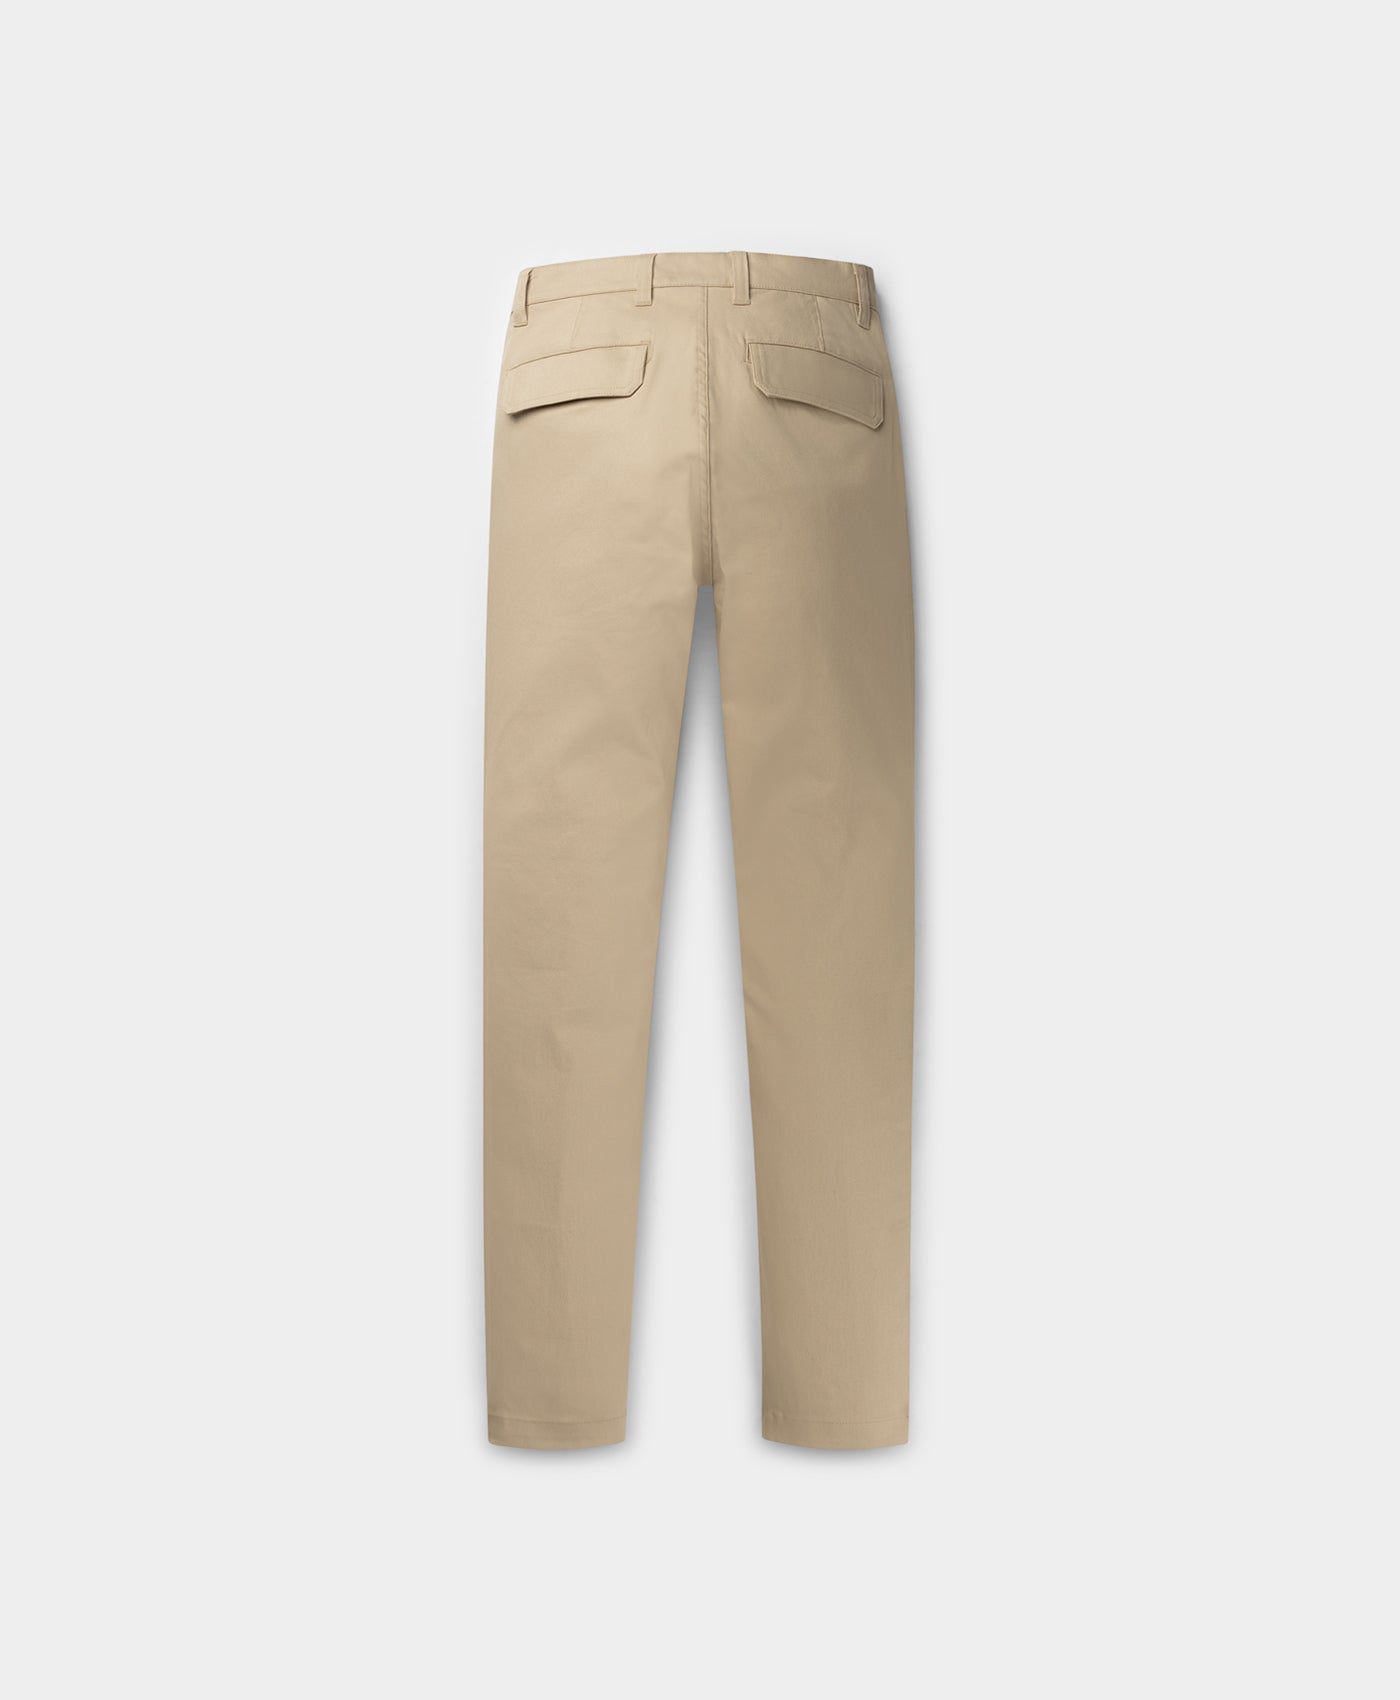 DP - Cargo Pants Beige - Packshot - Rear